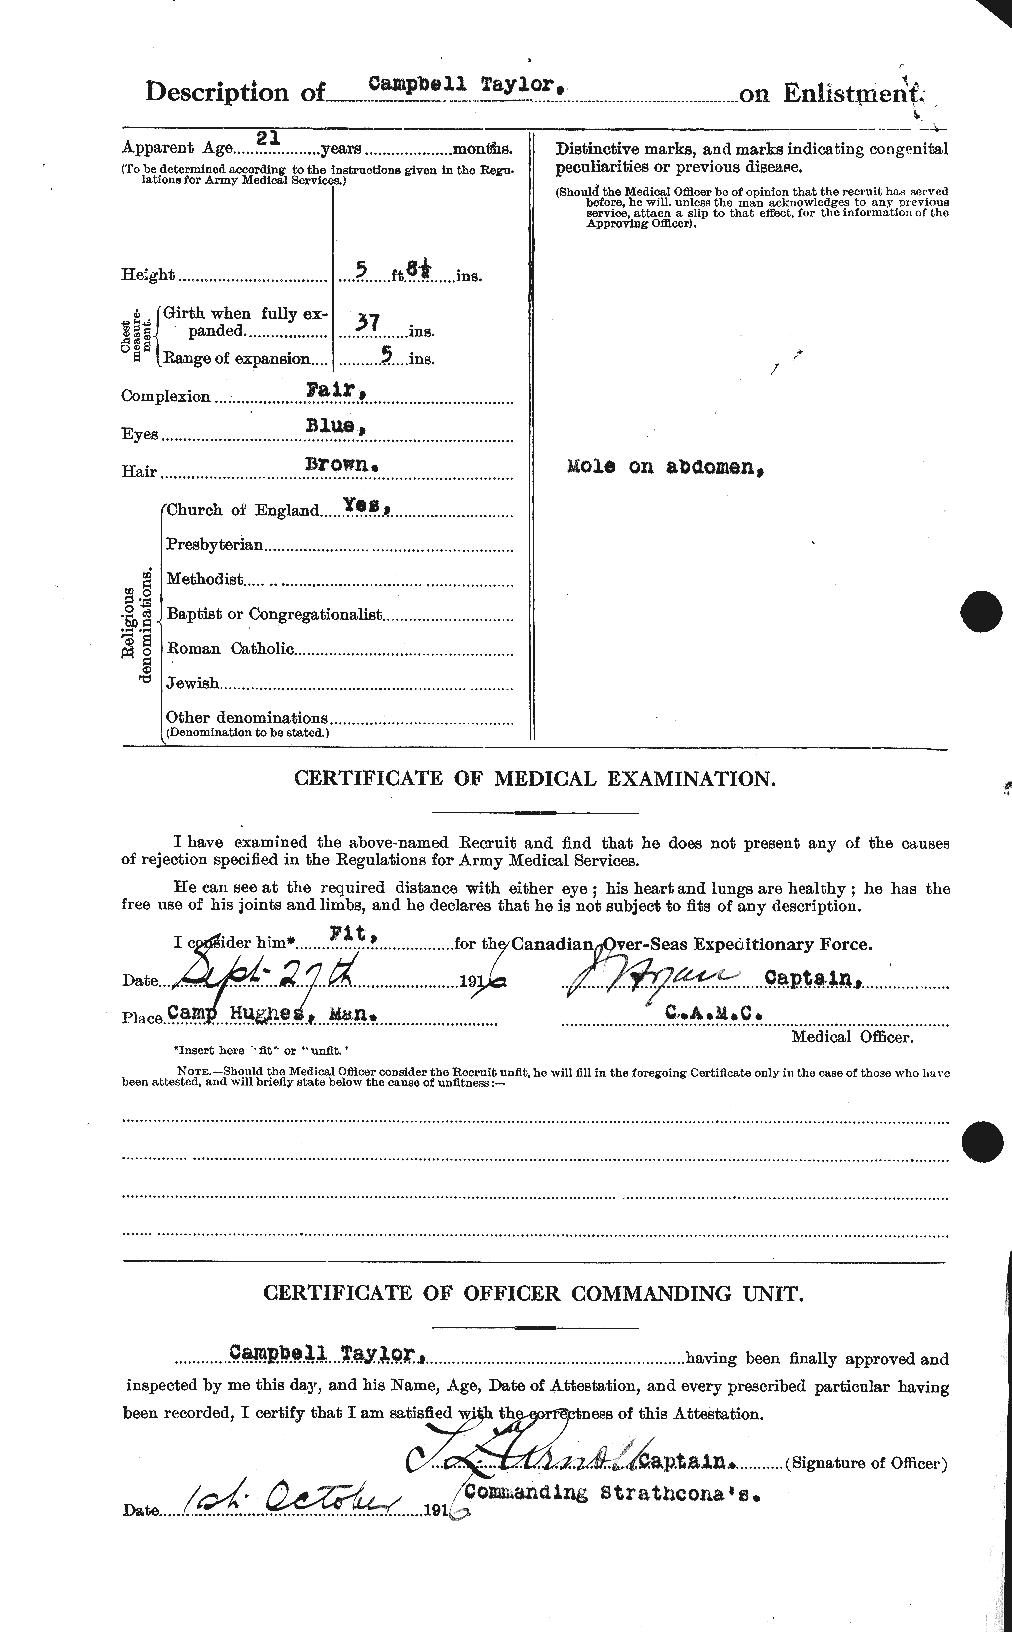 Dossiers du Personnel de la Première Guerre mondiale - CEC 626782b